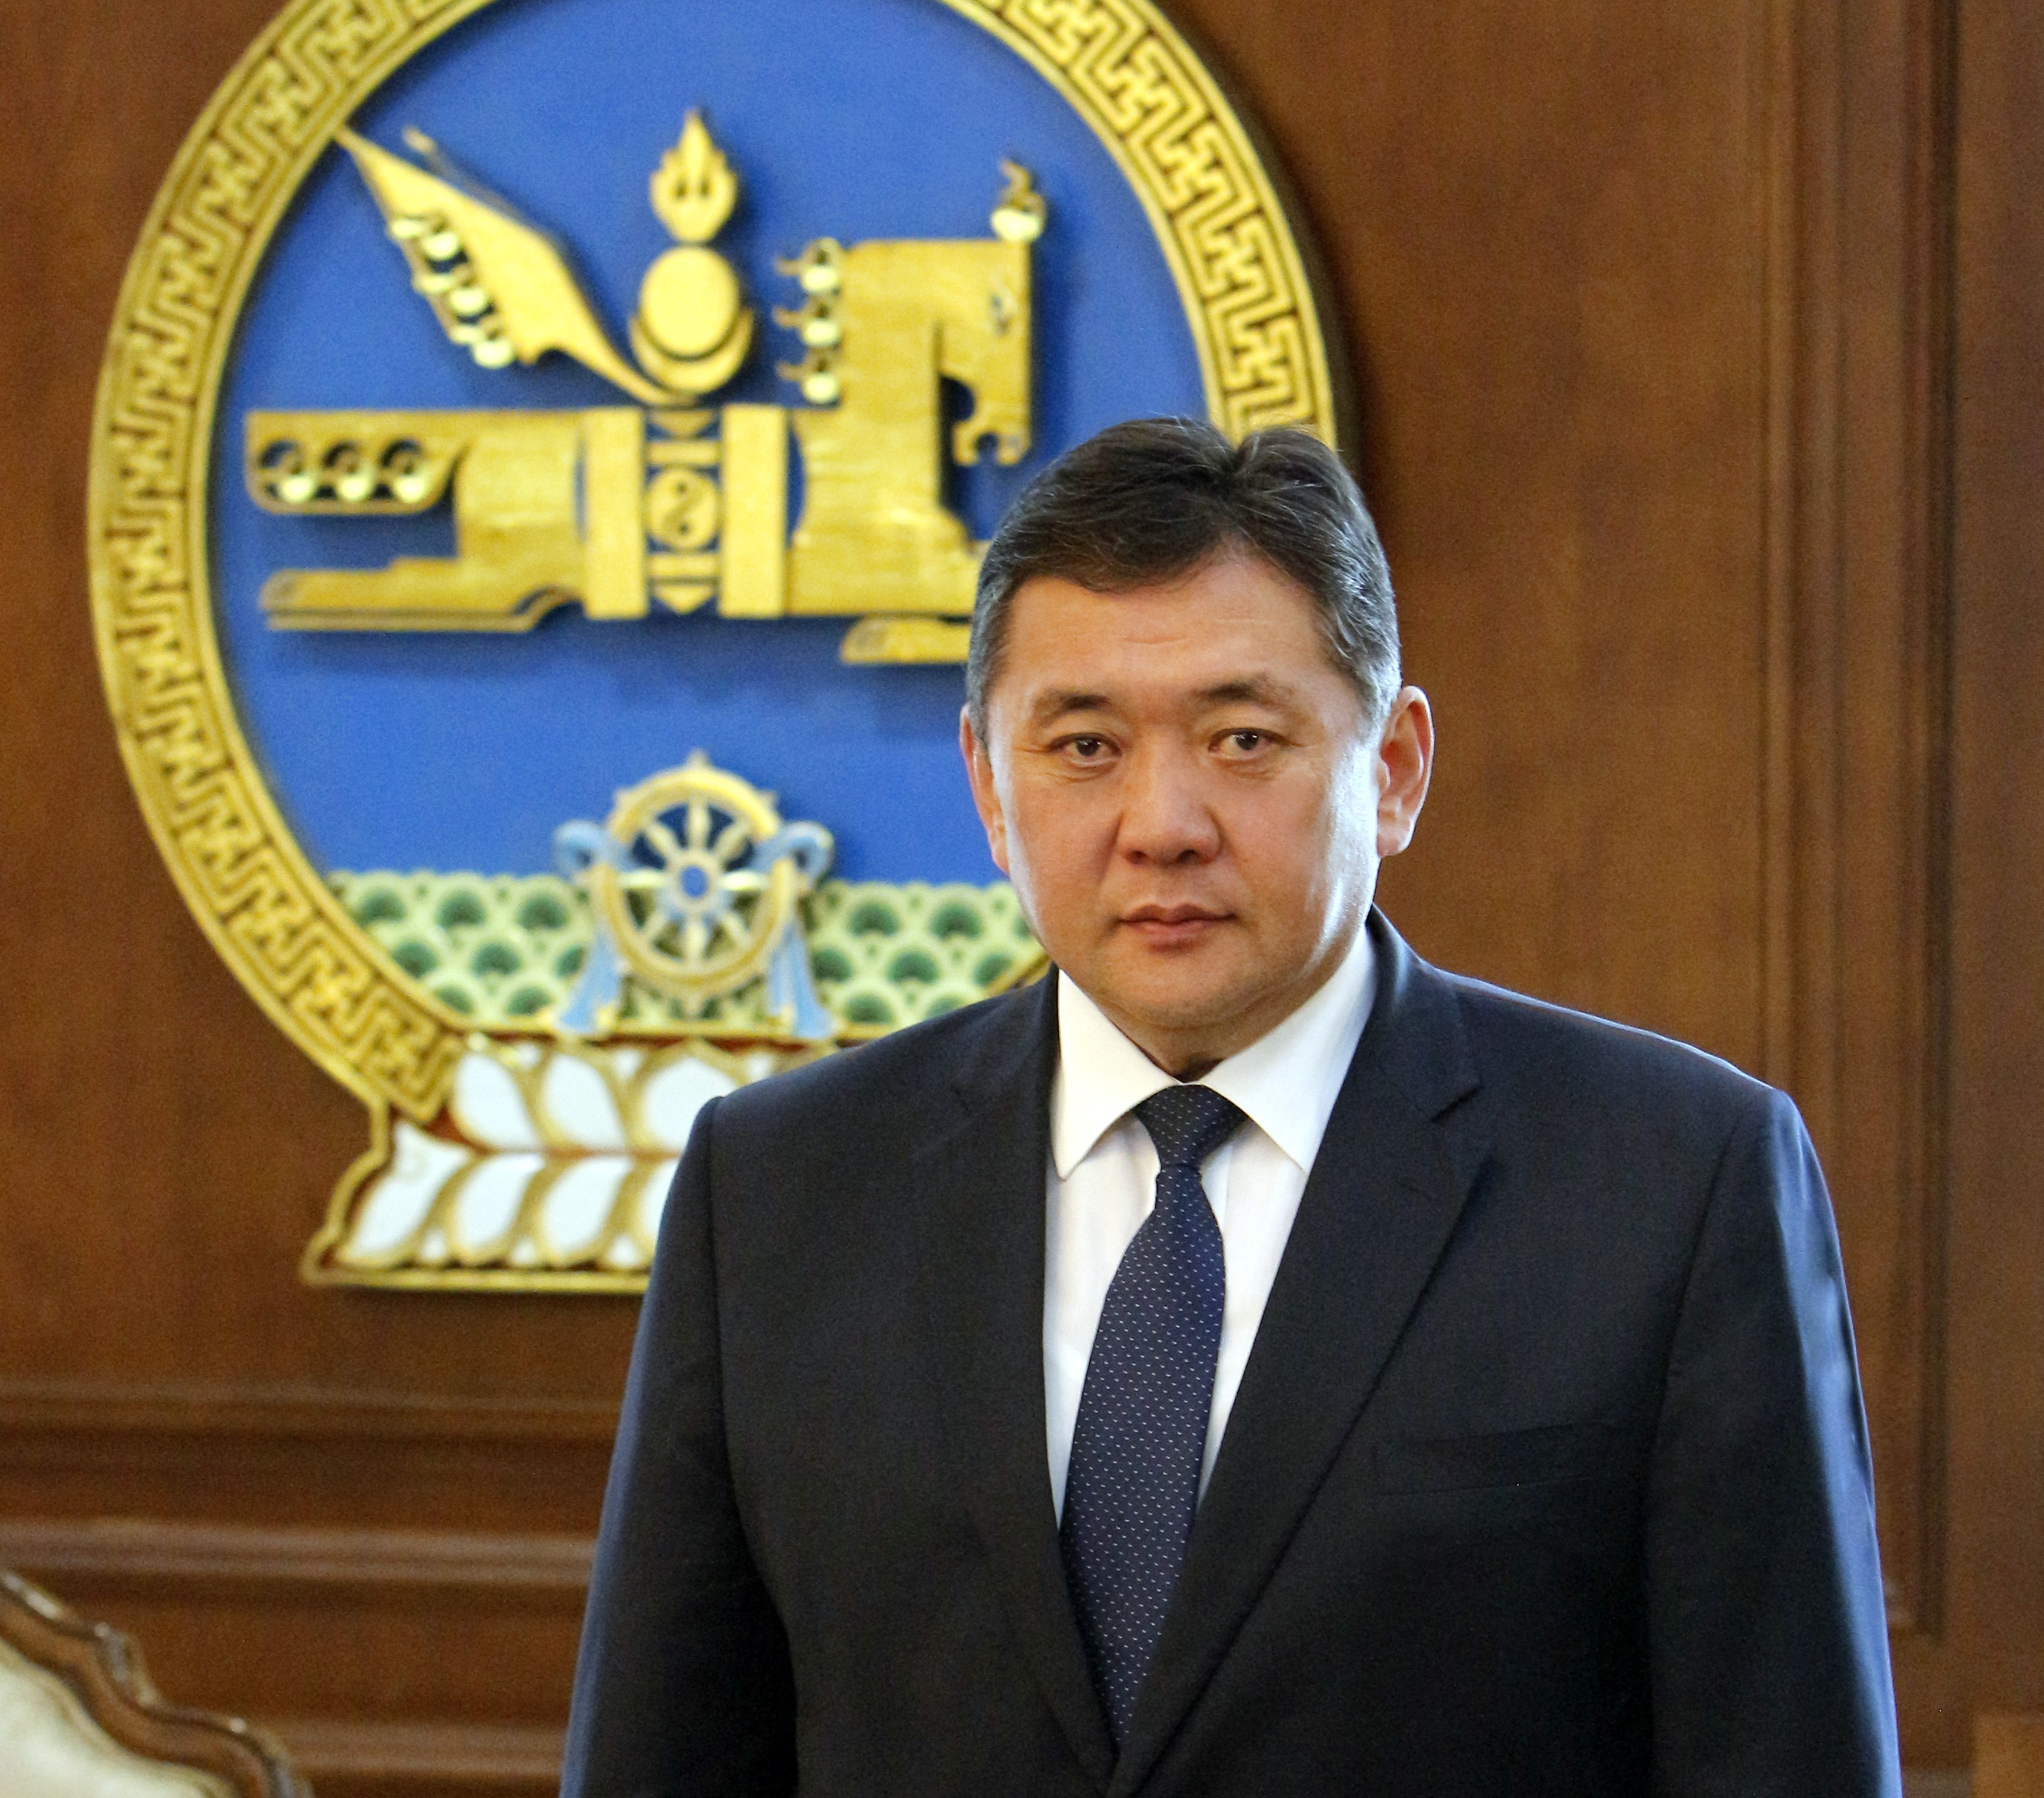 Монгол улсын Их хурлын дарга М.Энхболд нийт ард түмэндээ мэндчилгээ дэвшүүллээ